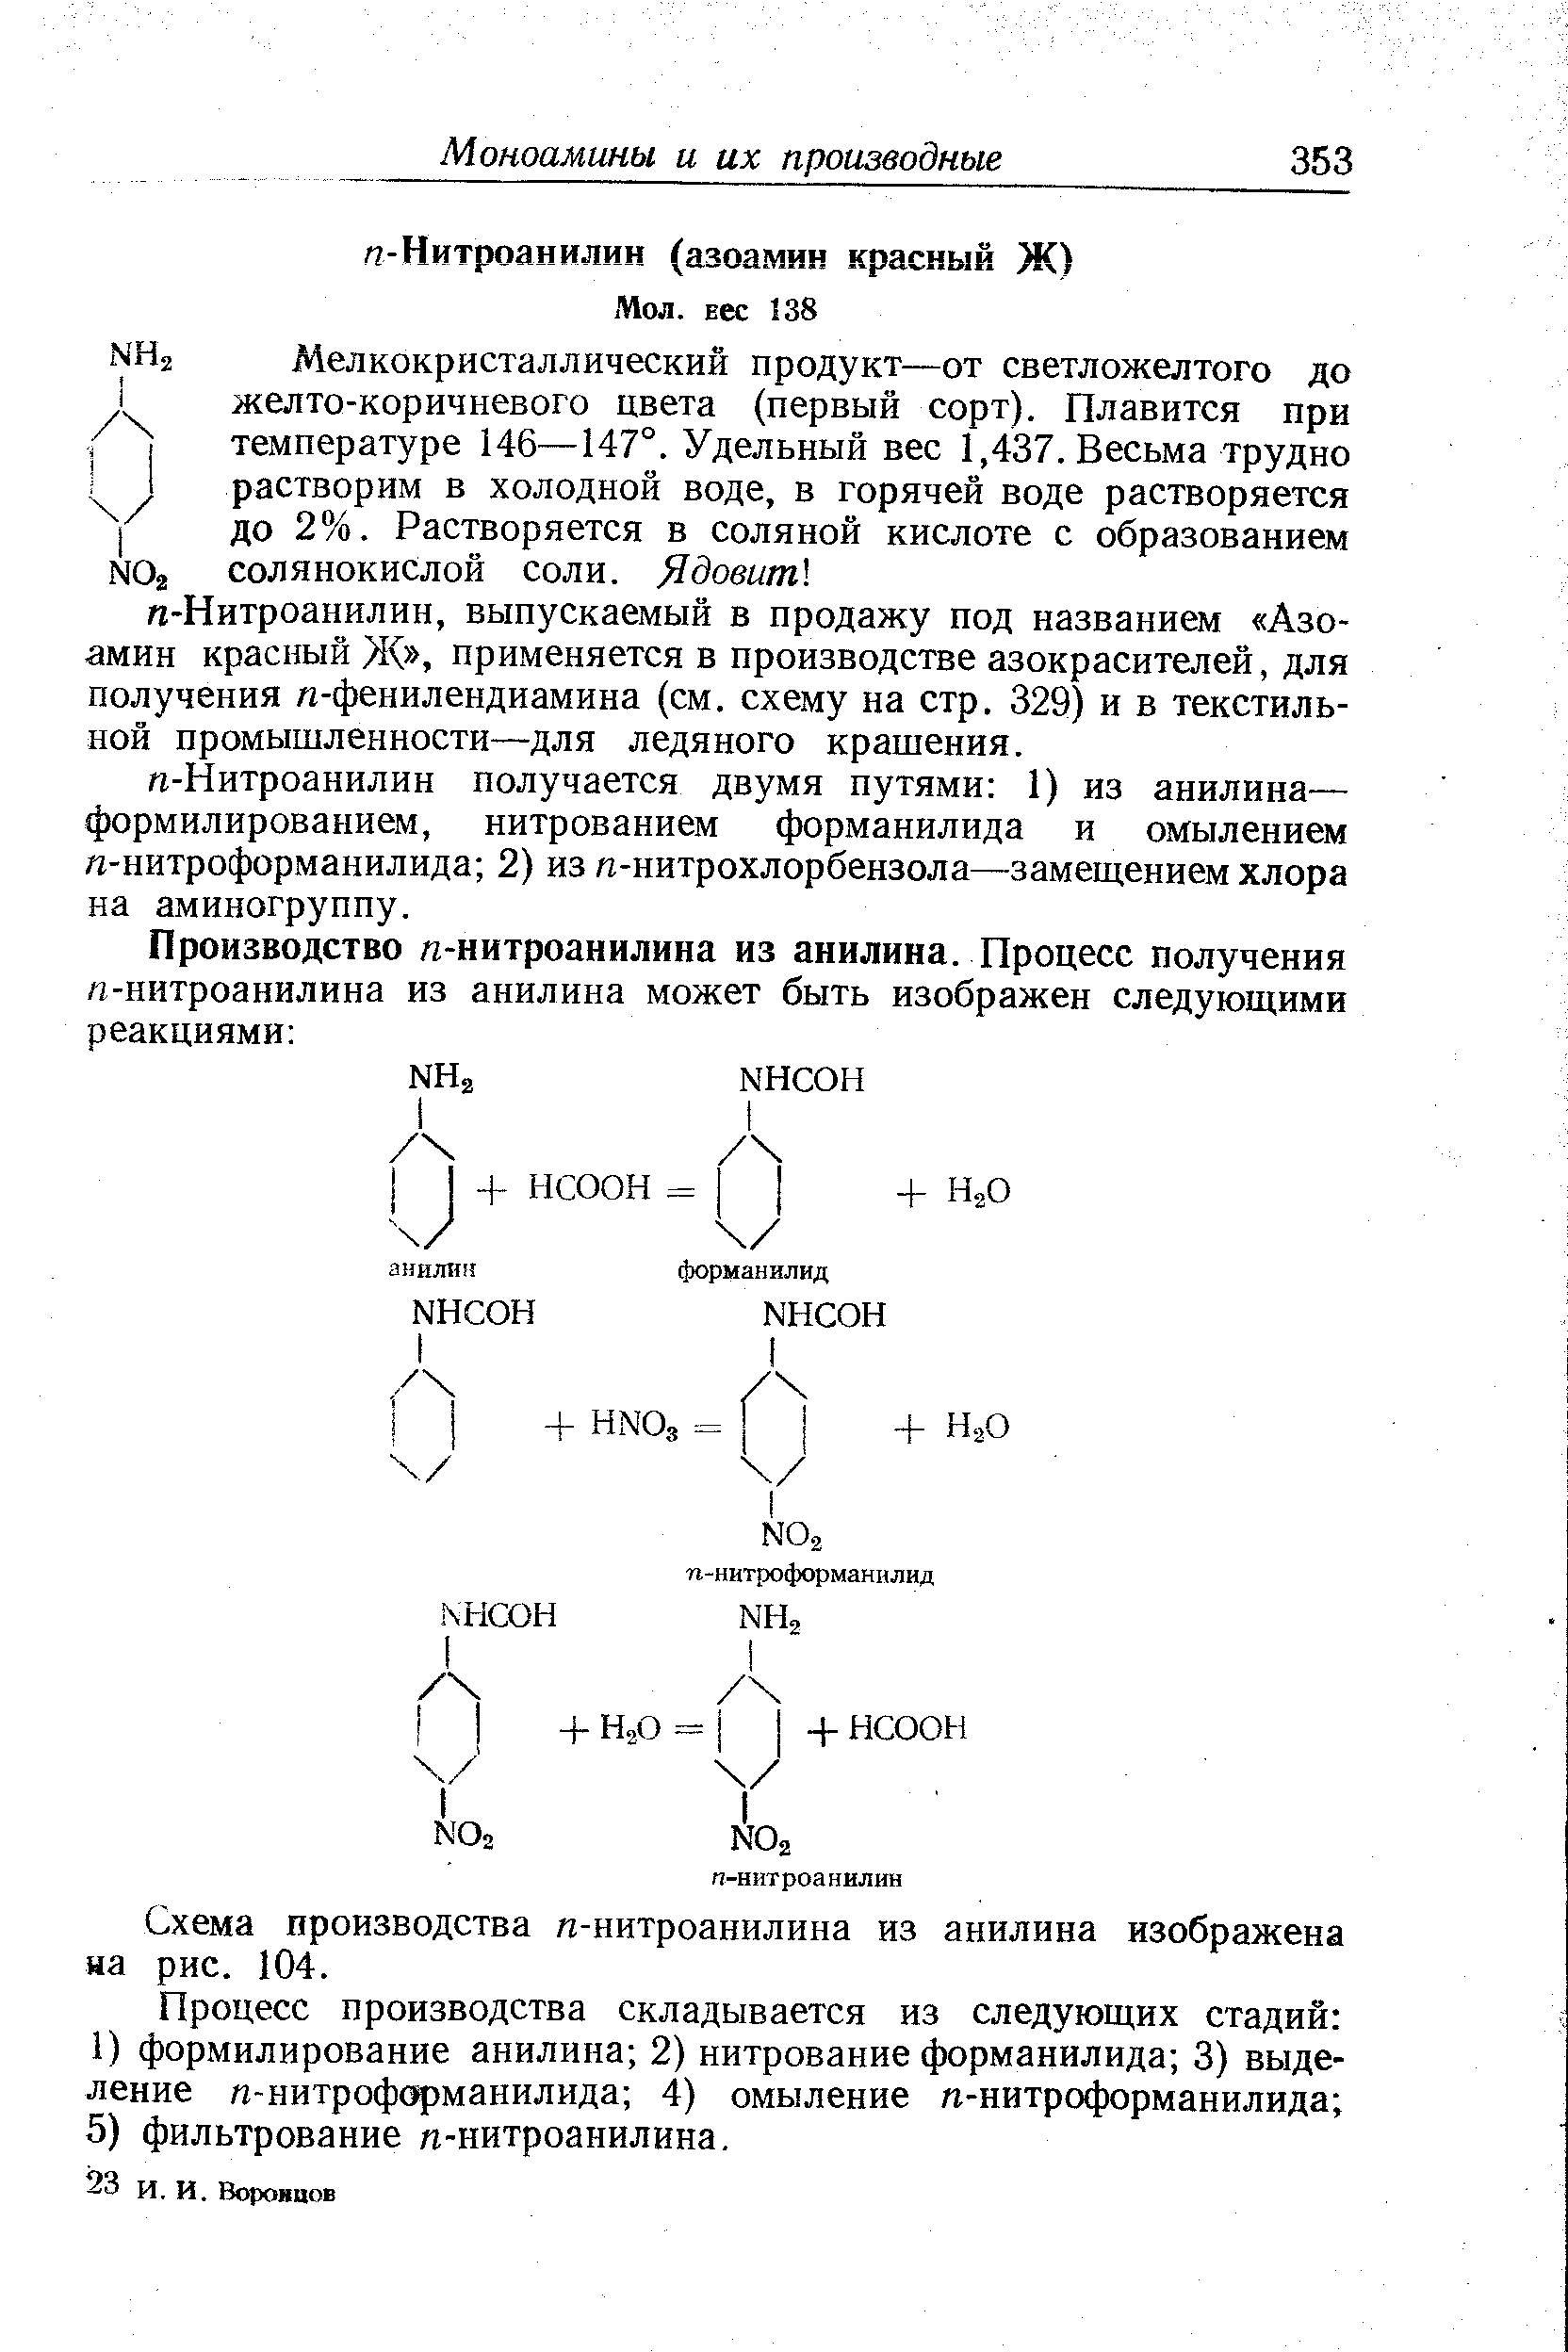 Схема производства п-нитроанилина из анилина изображена на рис. 104.